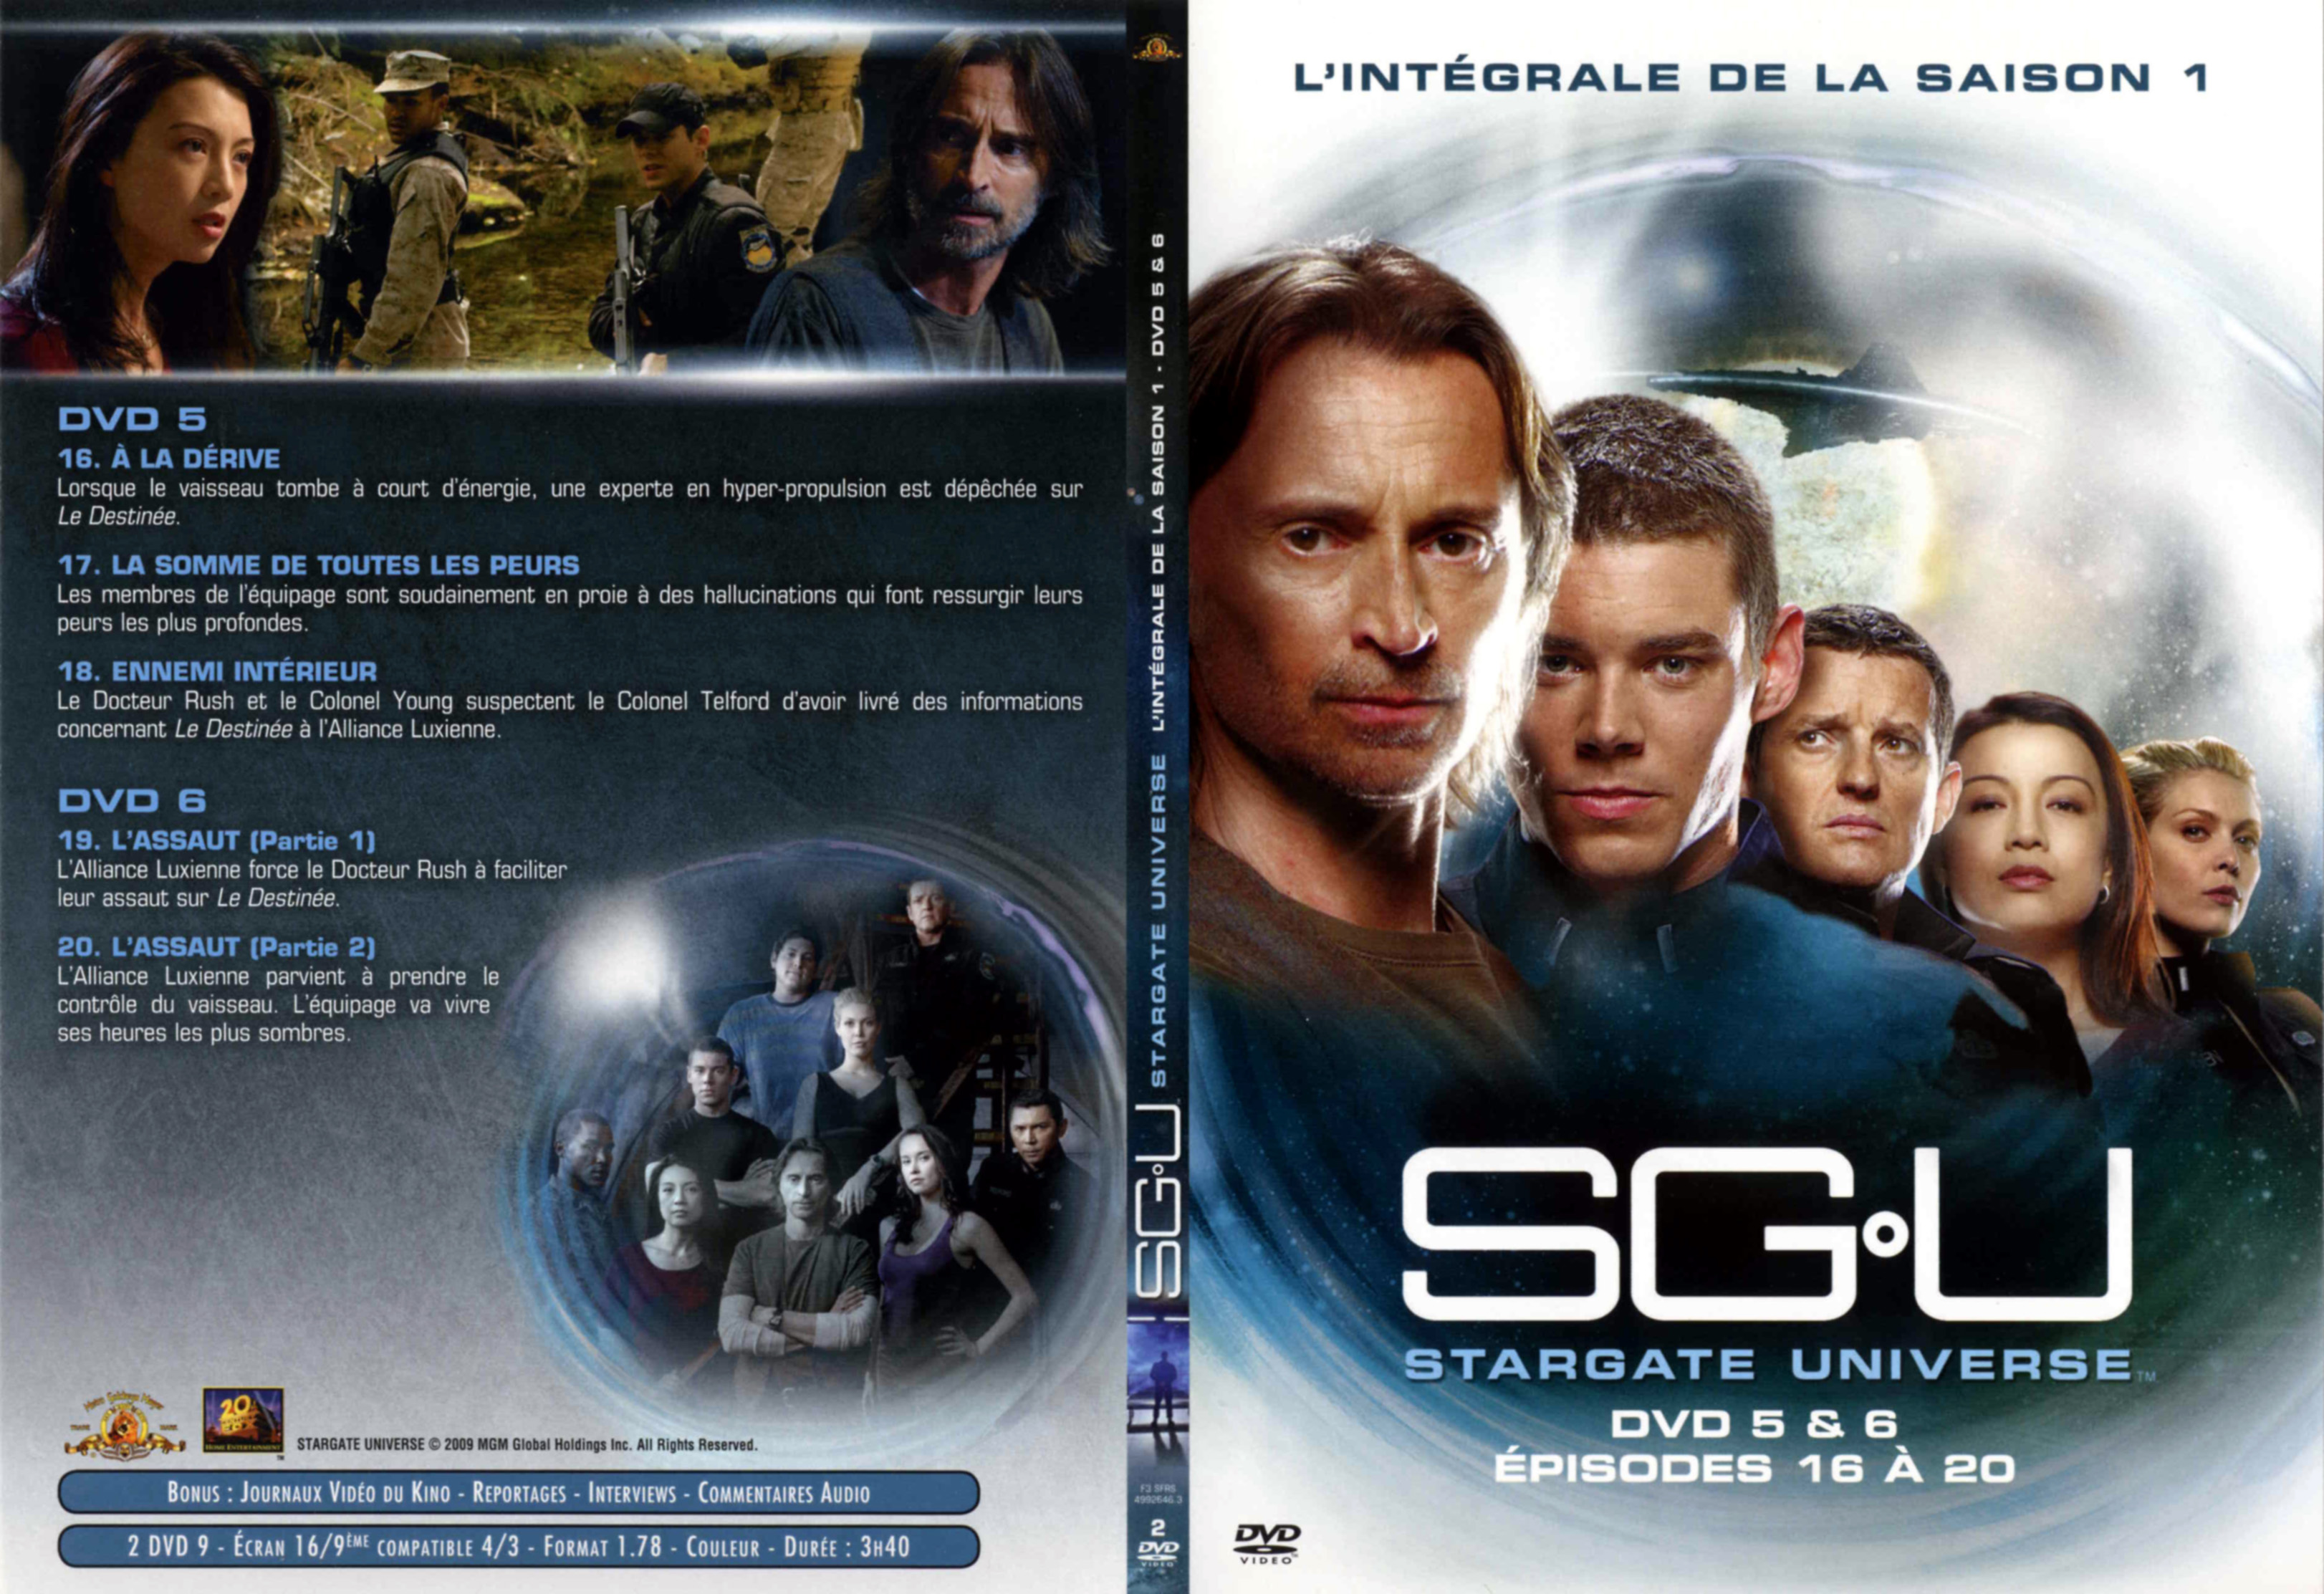 Jaquette DVD Stargate Universe Saison 1 DVD 3